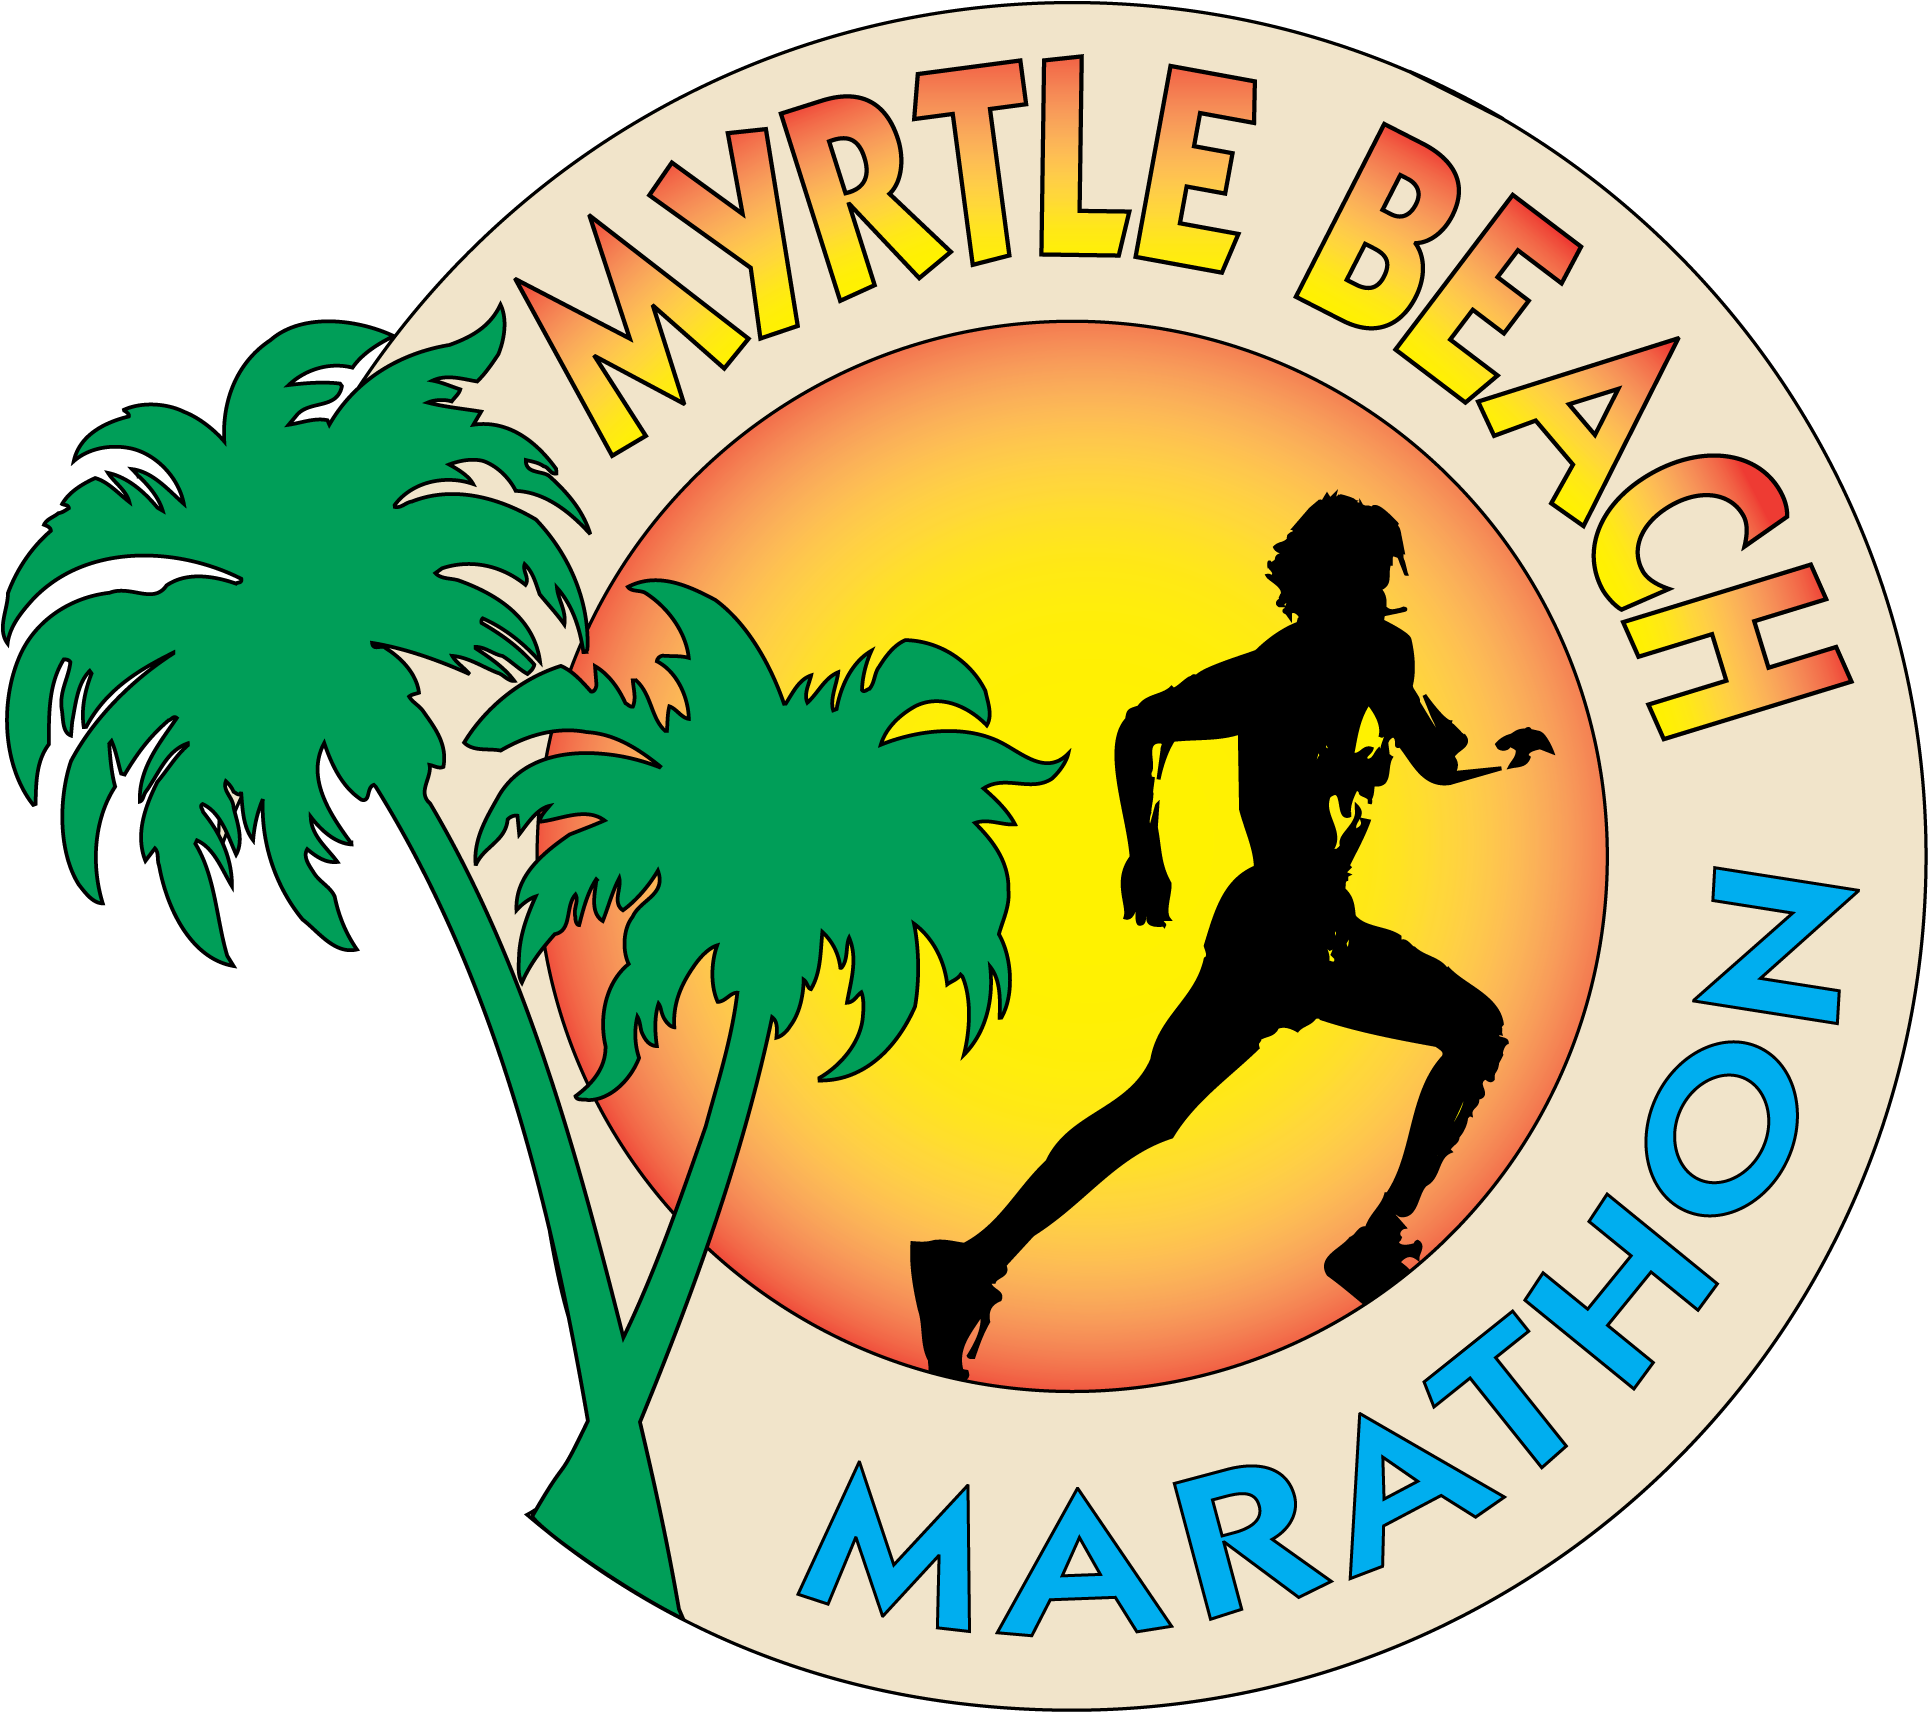 Myrtle Beach Marathon - Myrtle Beach Marathon 2018 (2475x2475)